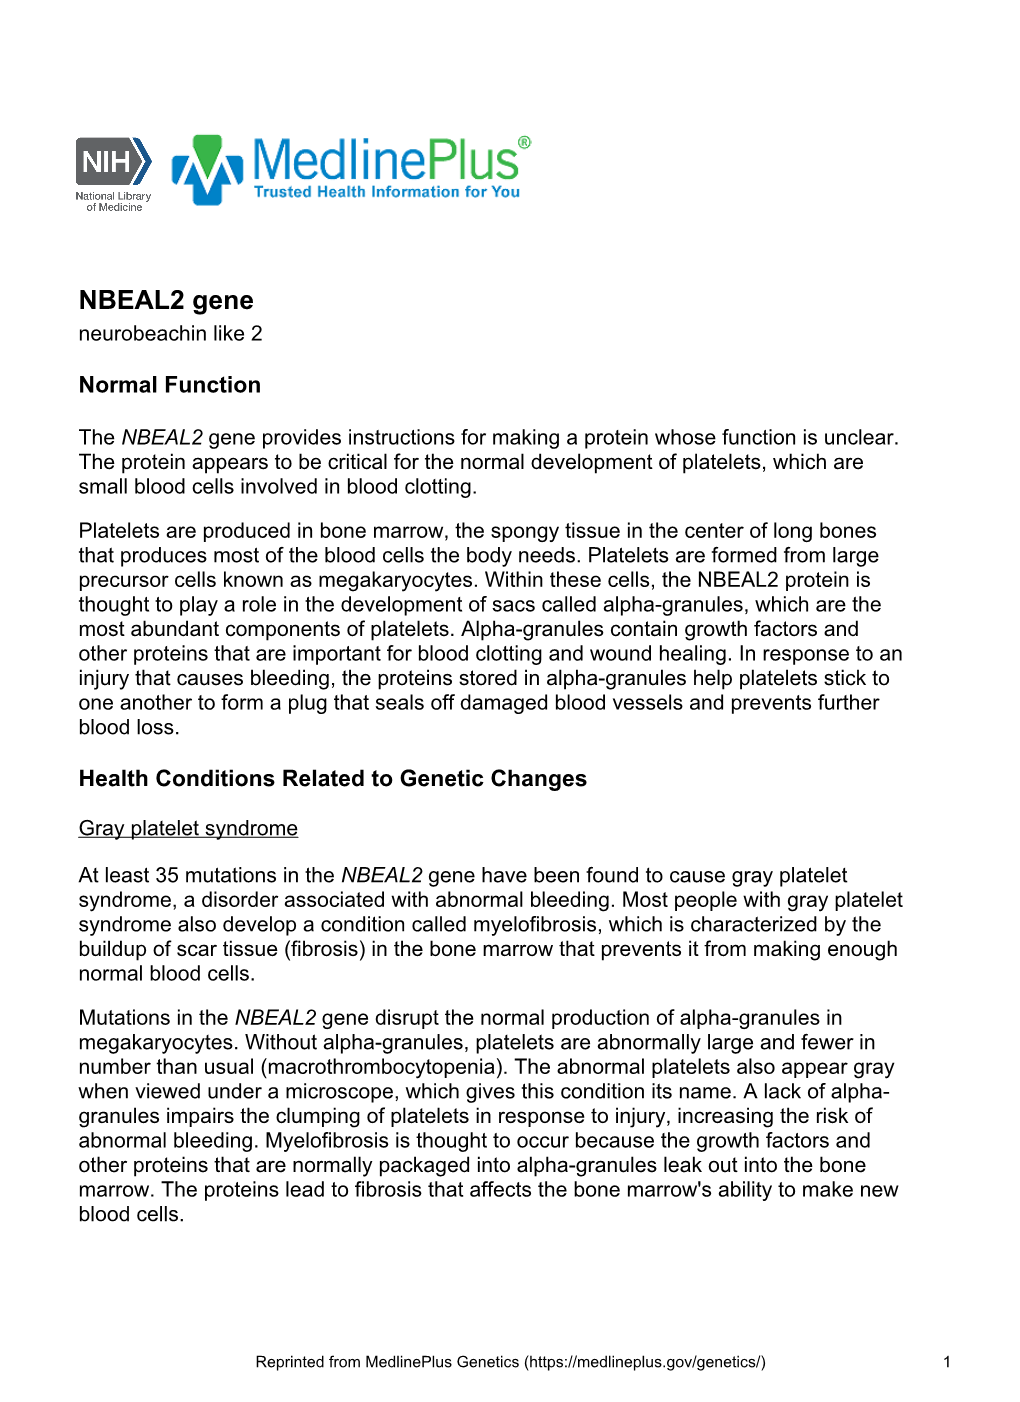 NBEAL2 Gene Neurobeachin Like 2